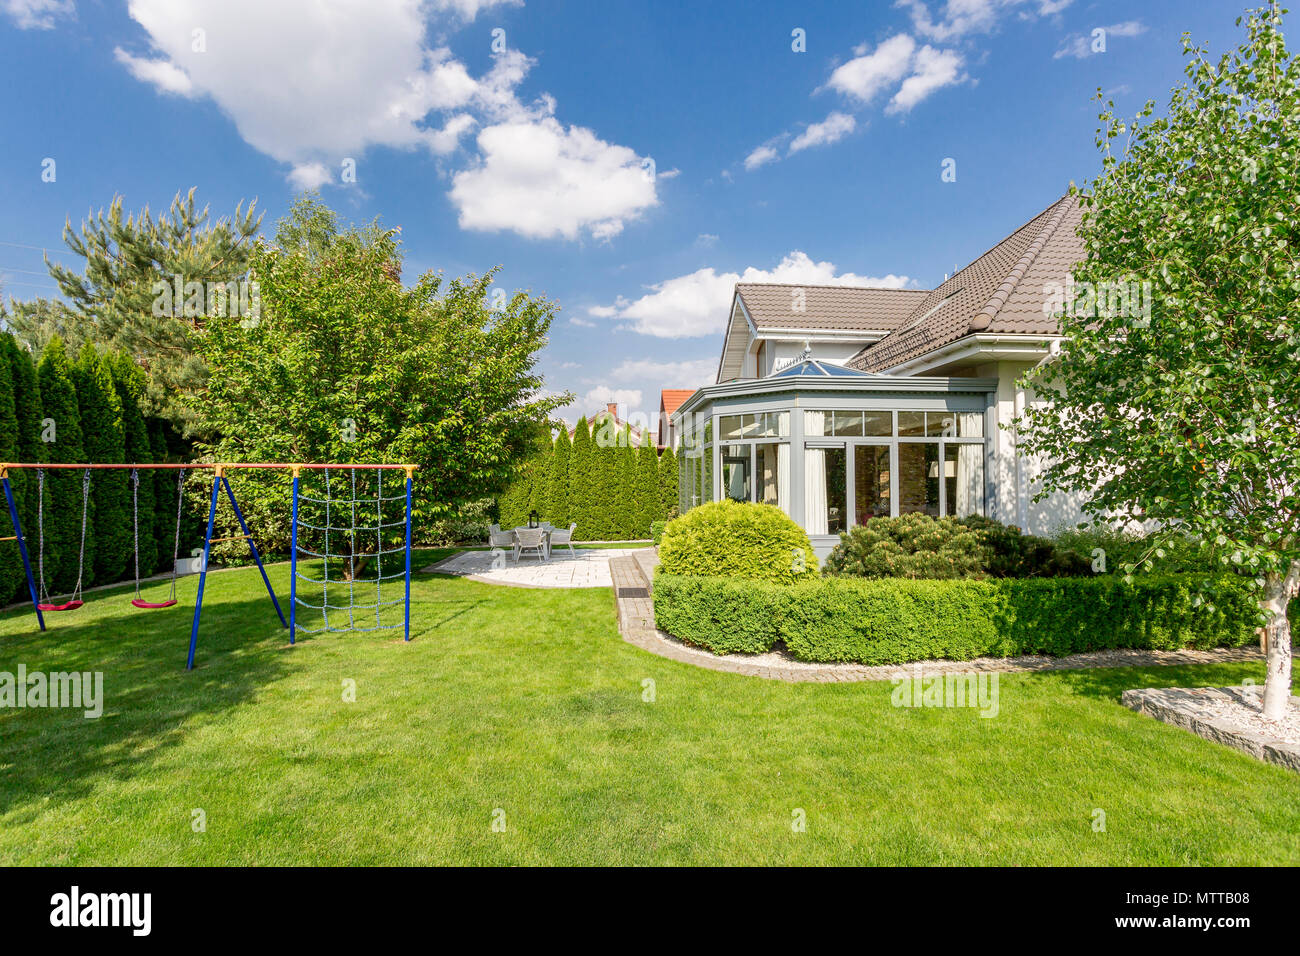 New style villa with beautiful large backyard Stock Photo